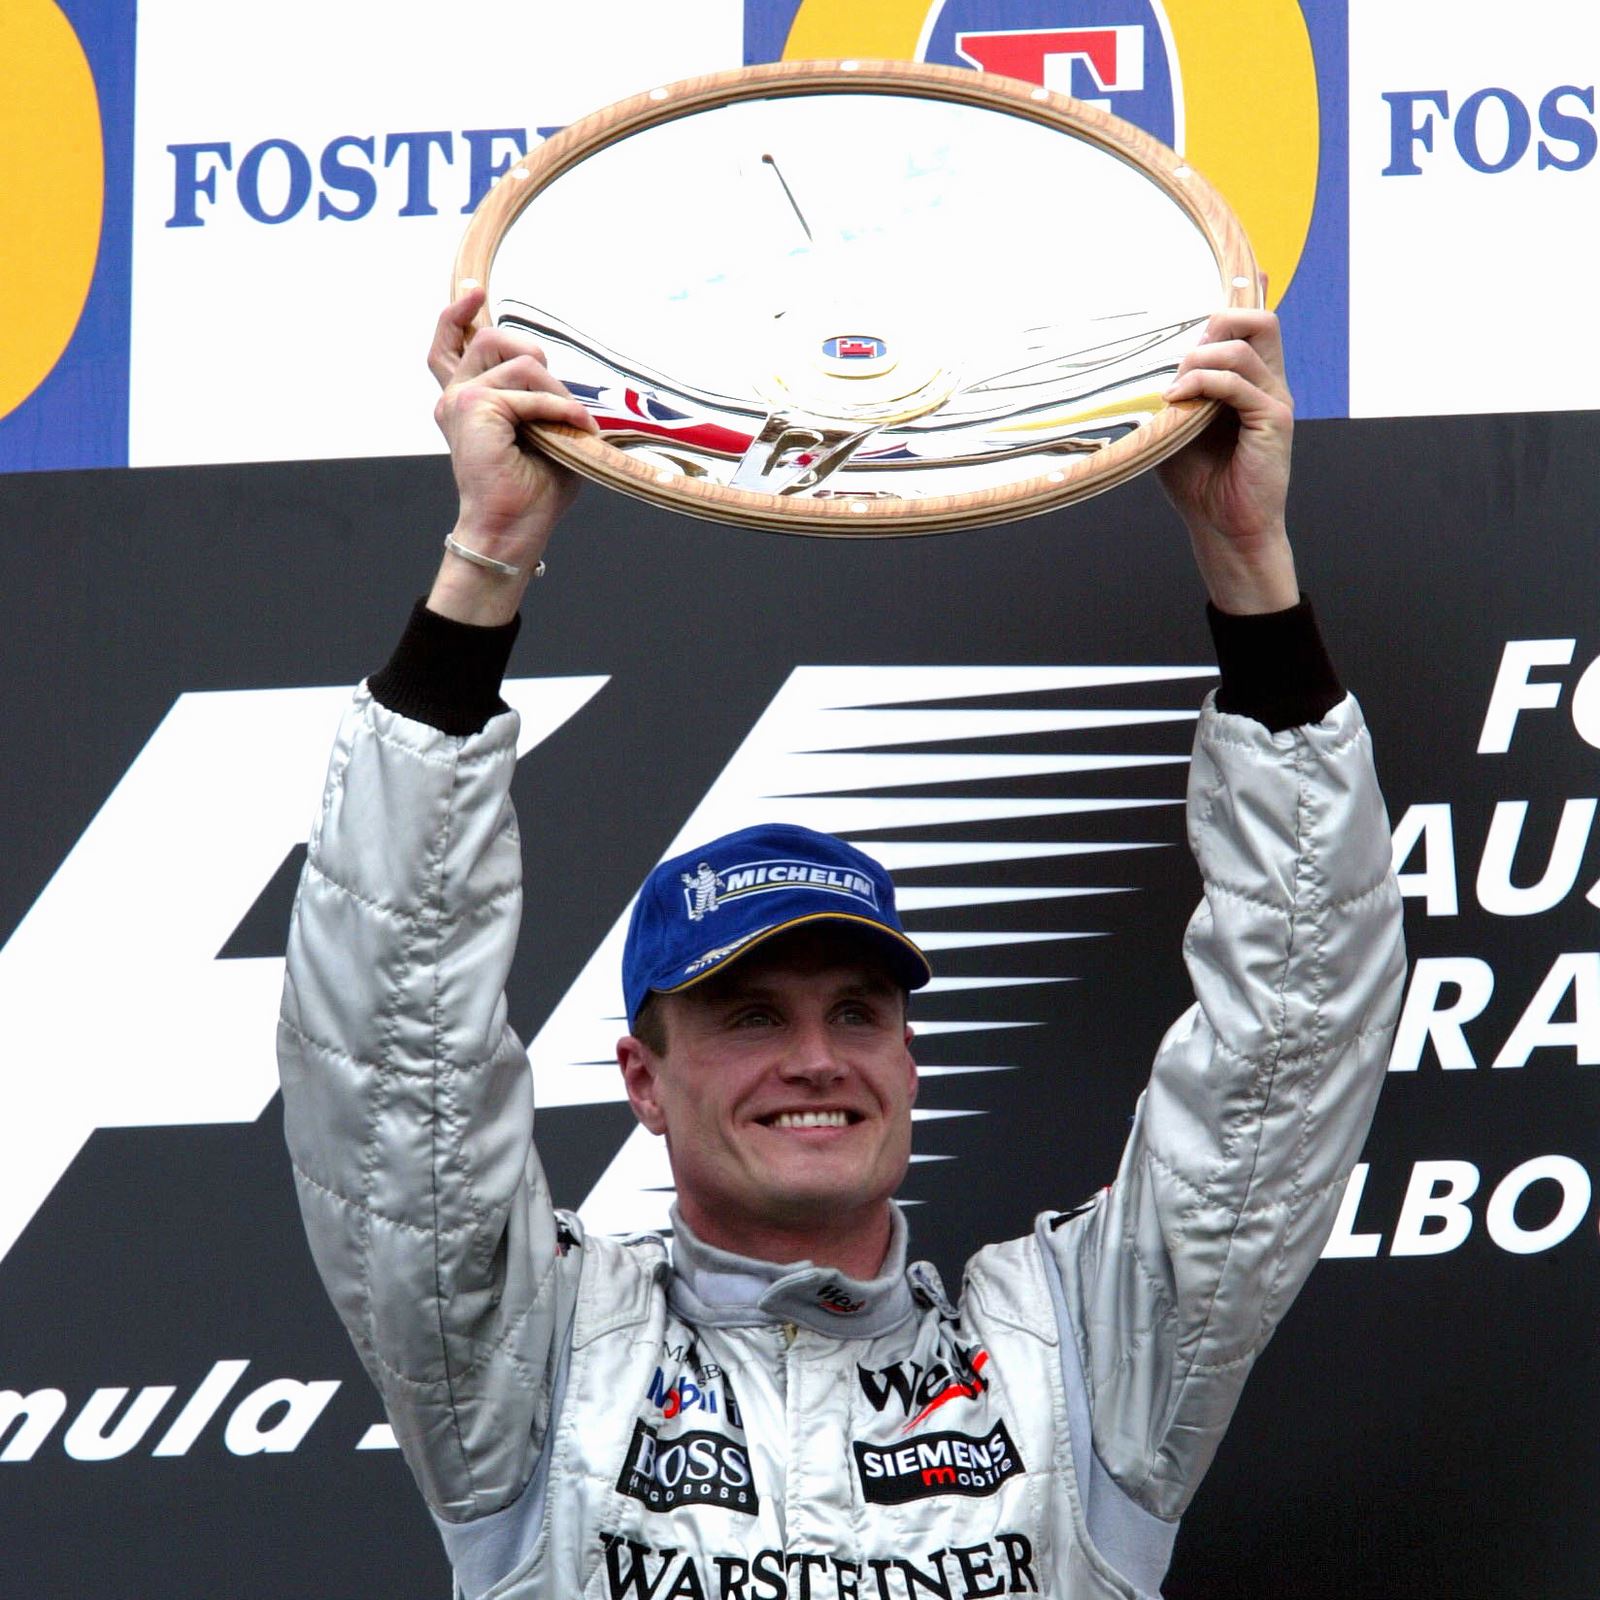 David Coulthard, vainqueur du GP d'Australie 2003